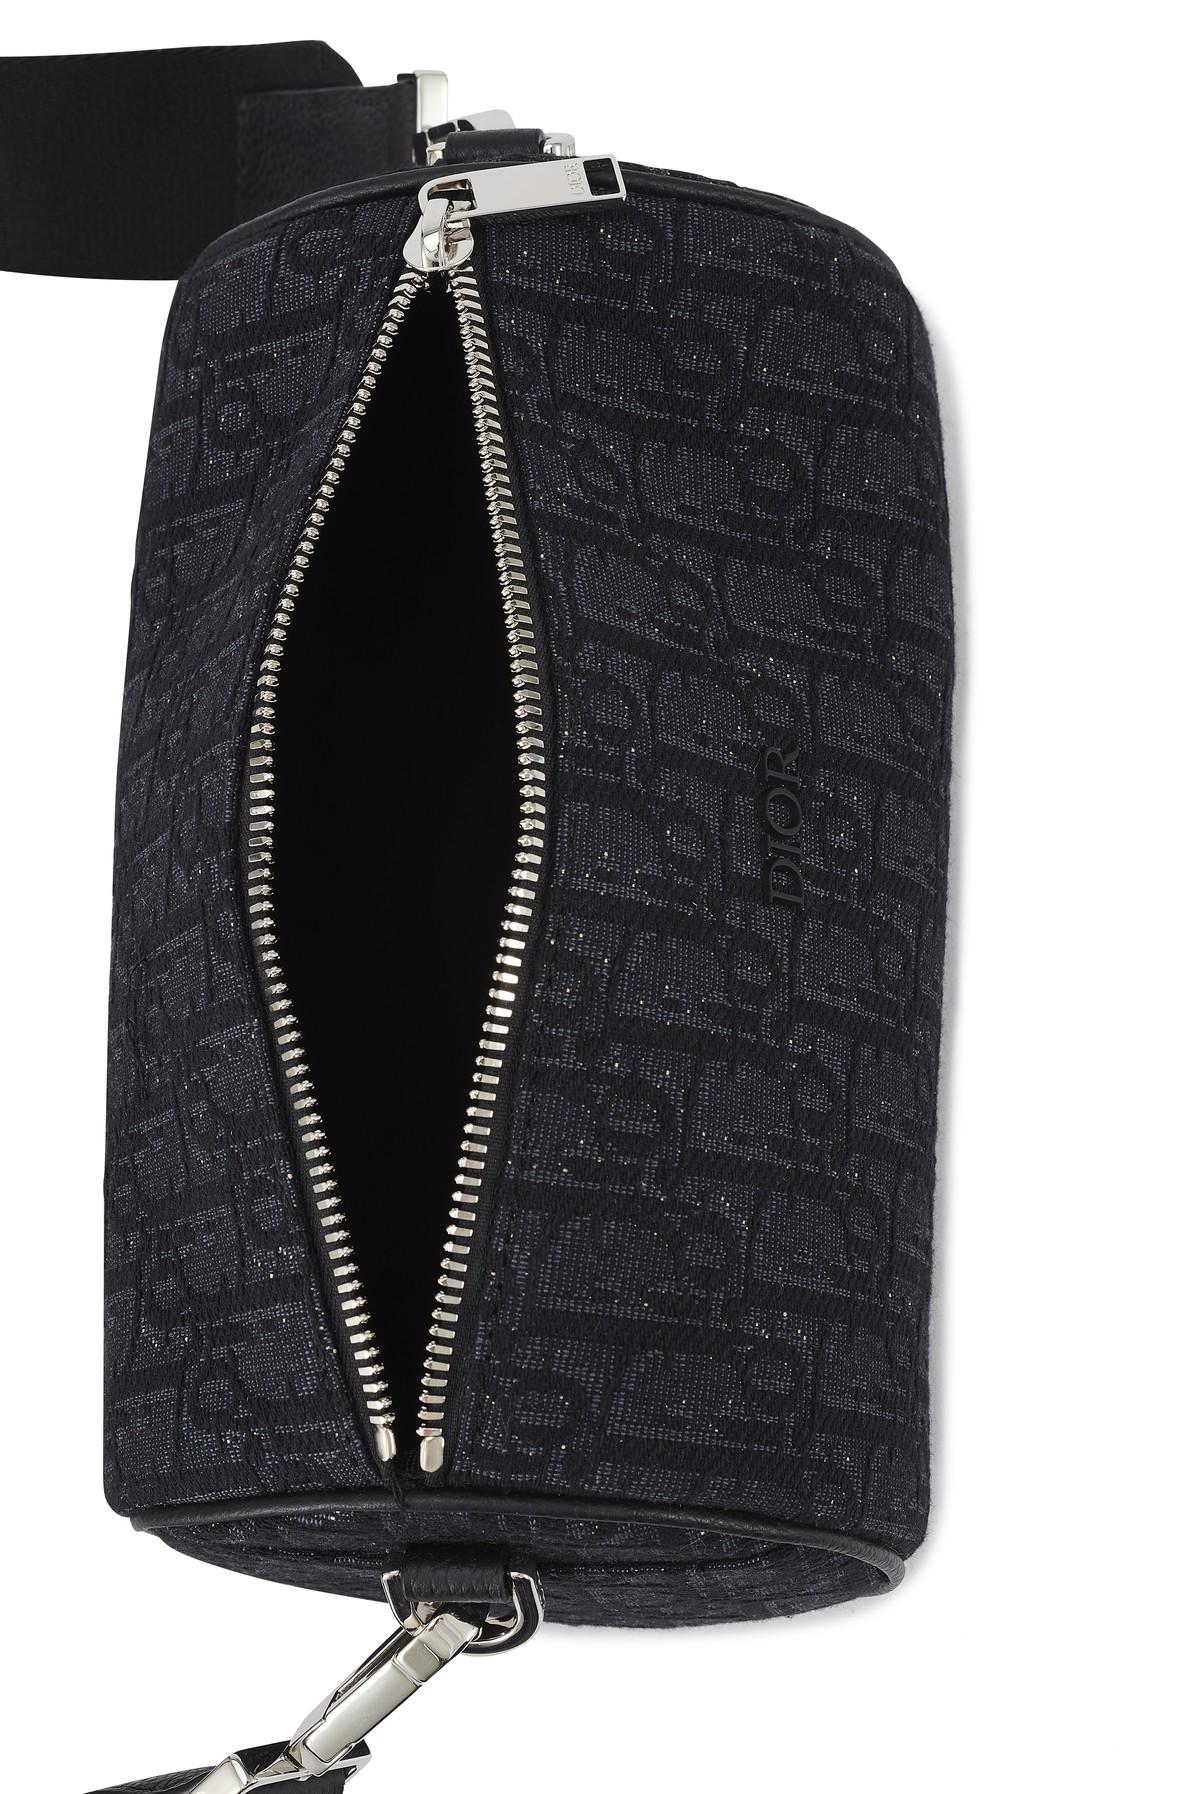 Dior Men's Roller Messenger Bag Oblique Jacquard – Coco Approved Studio